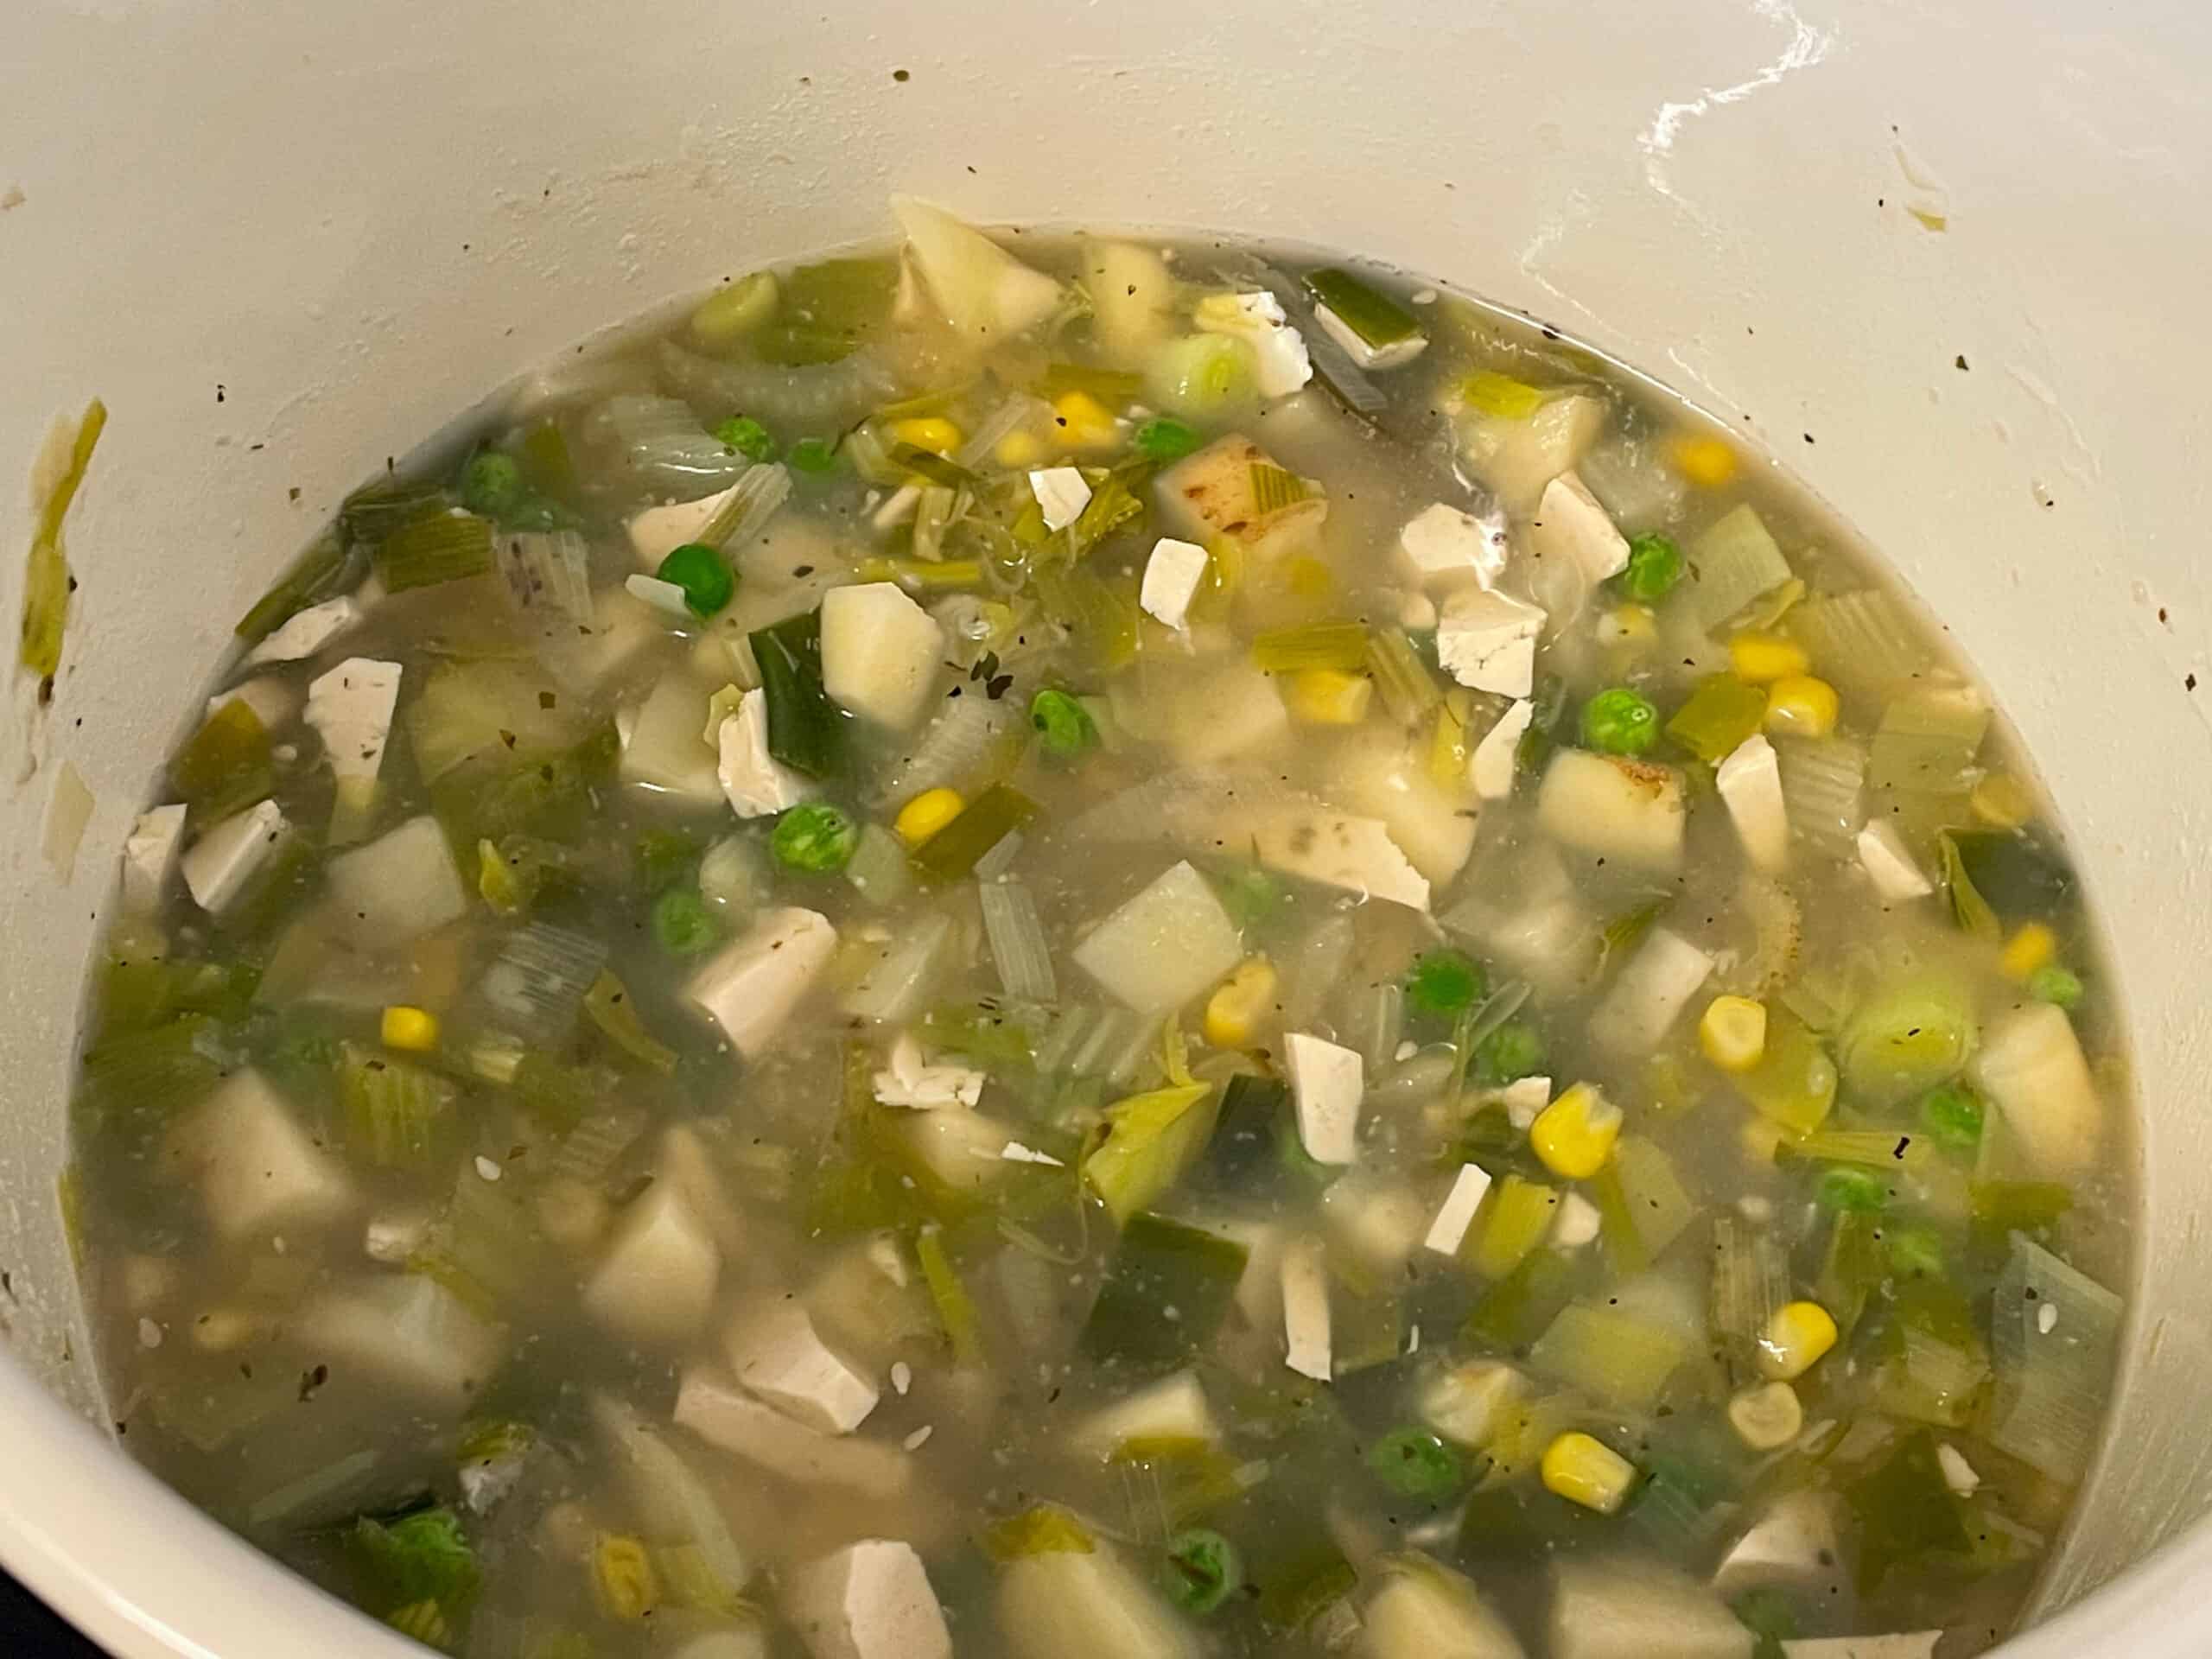 Veggie stock added to veggies in soup pot.